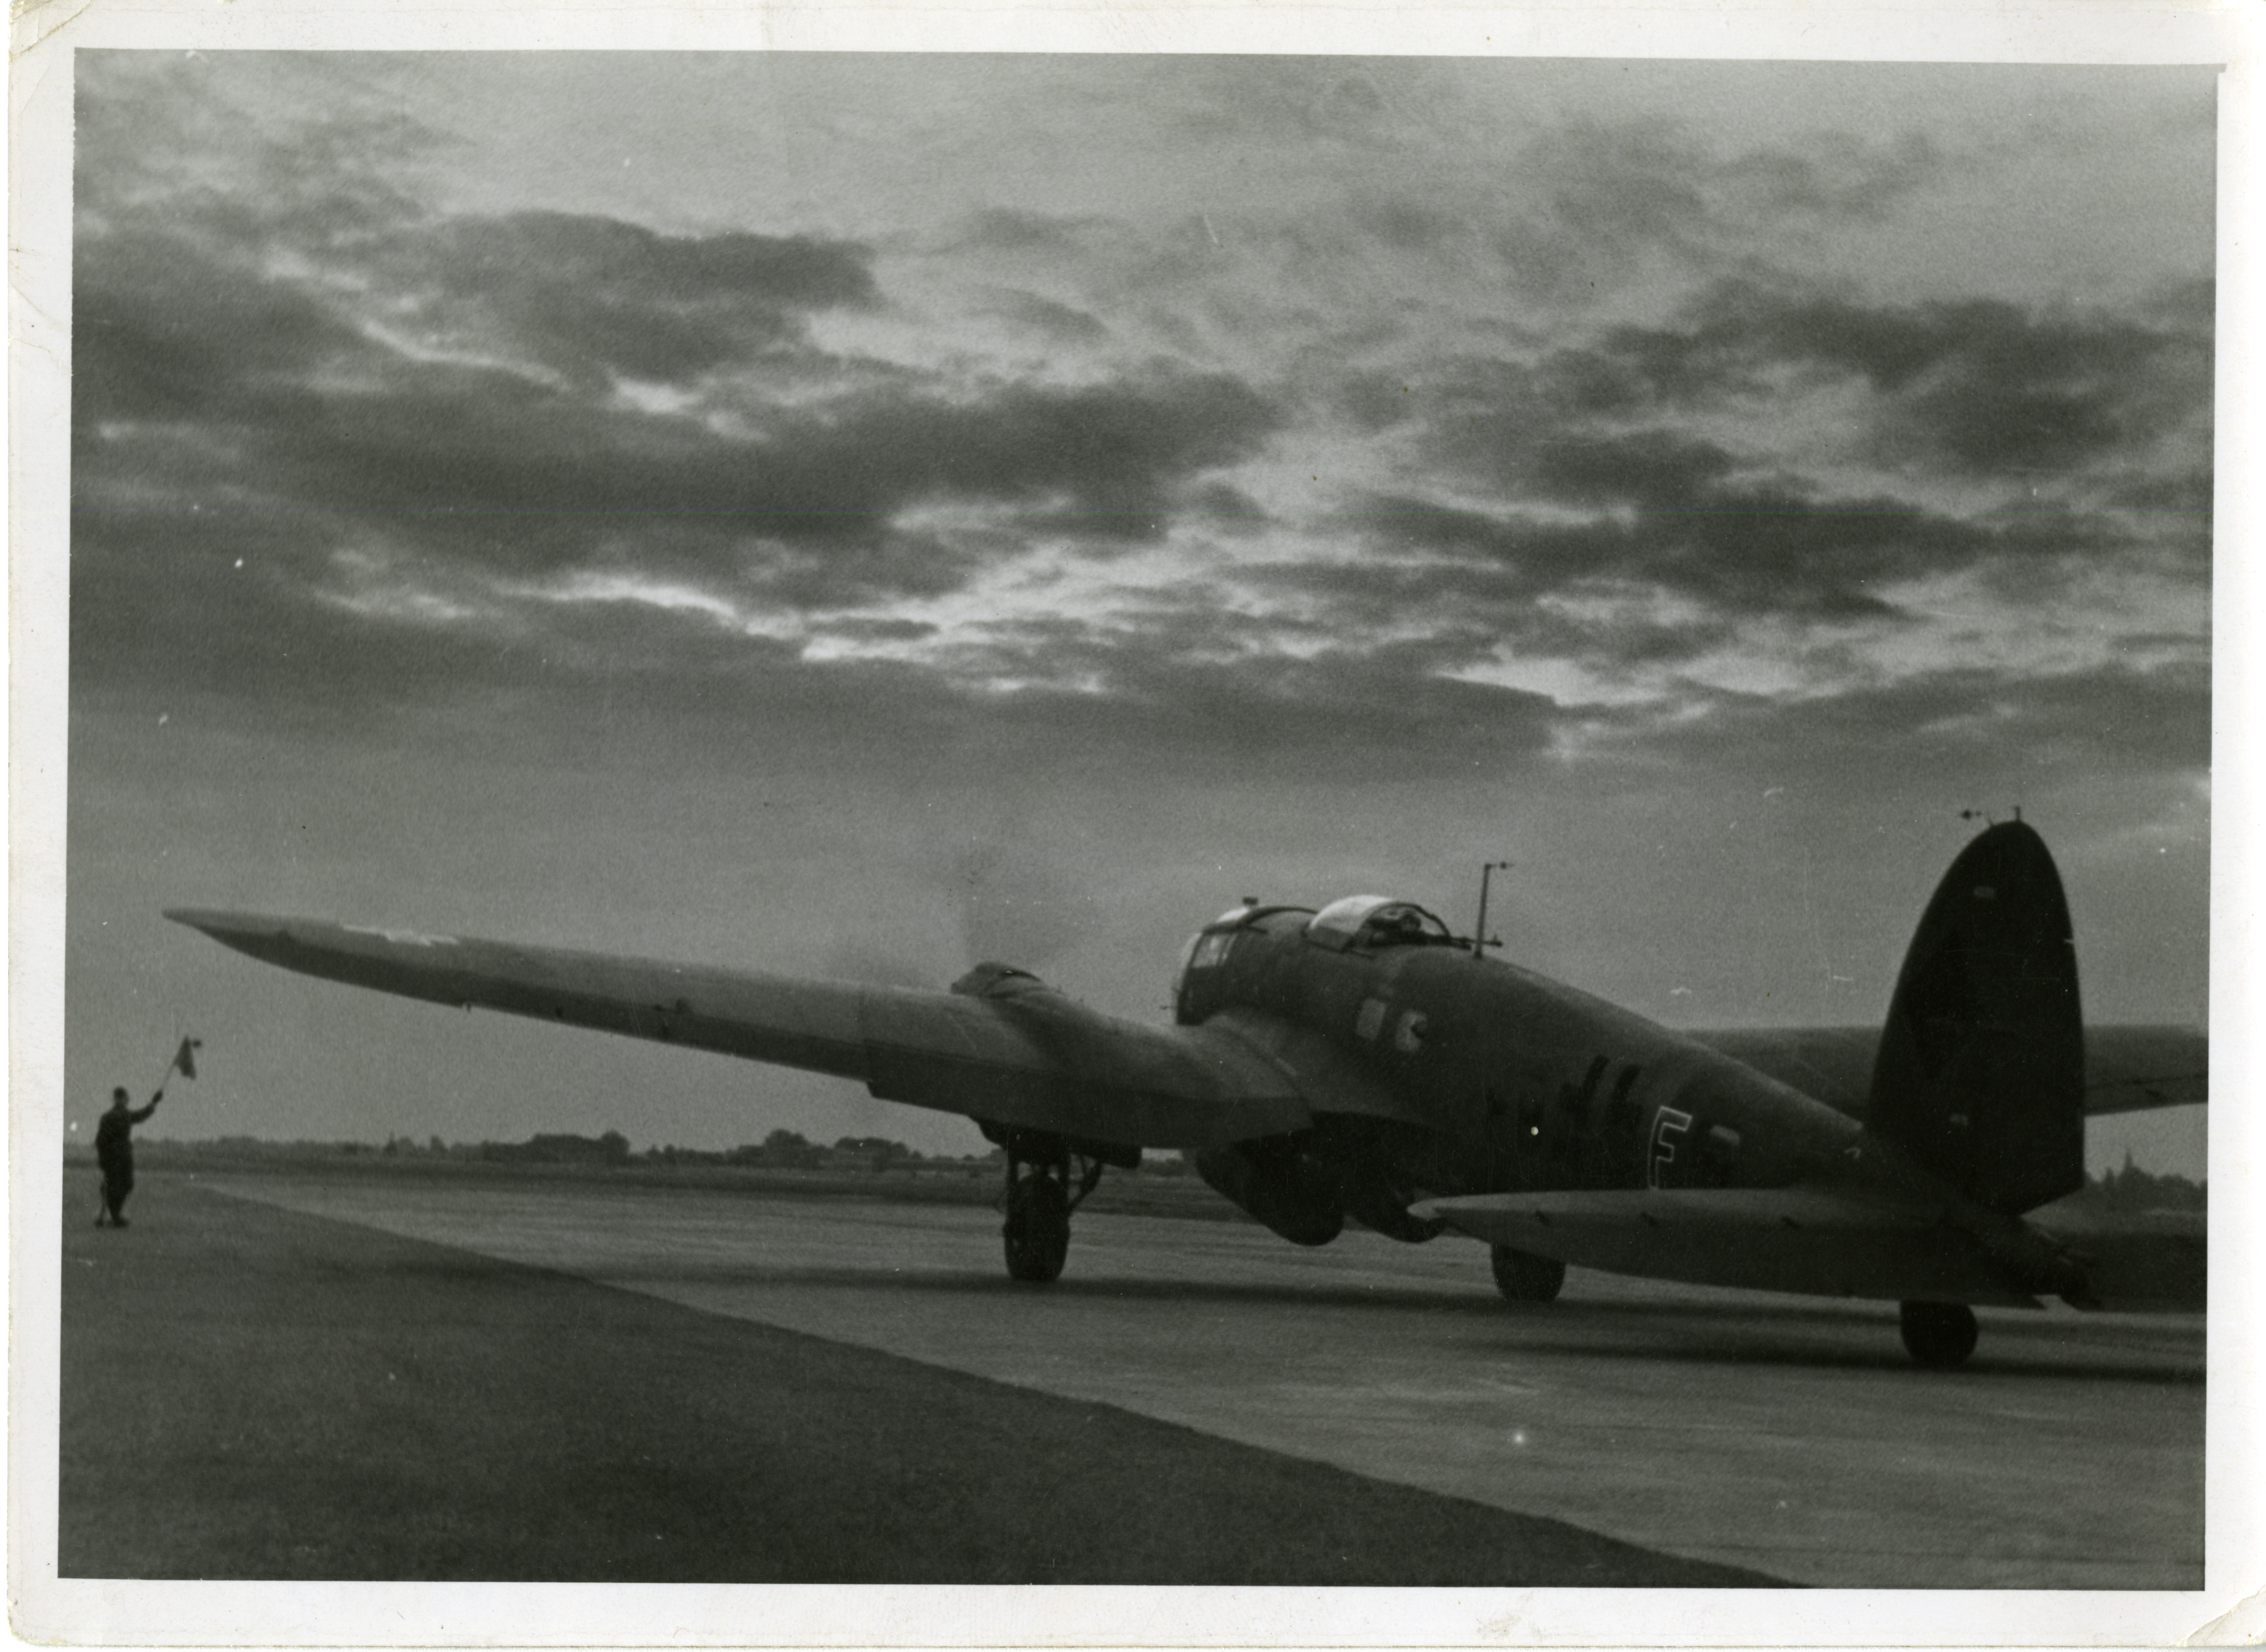 heinkel he 111 bomber